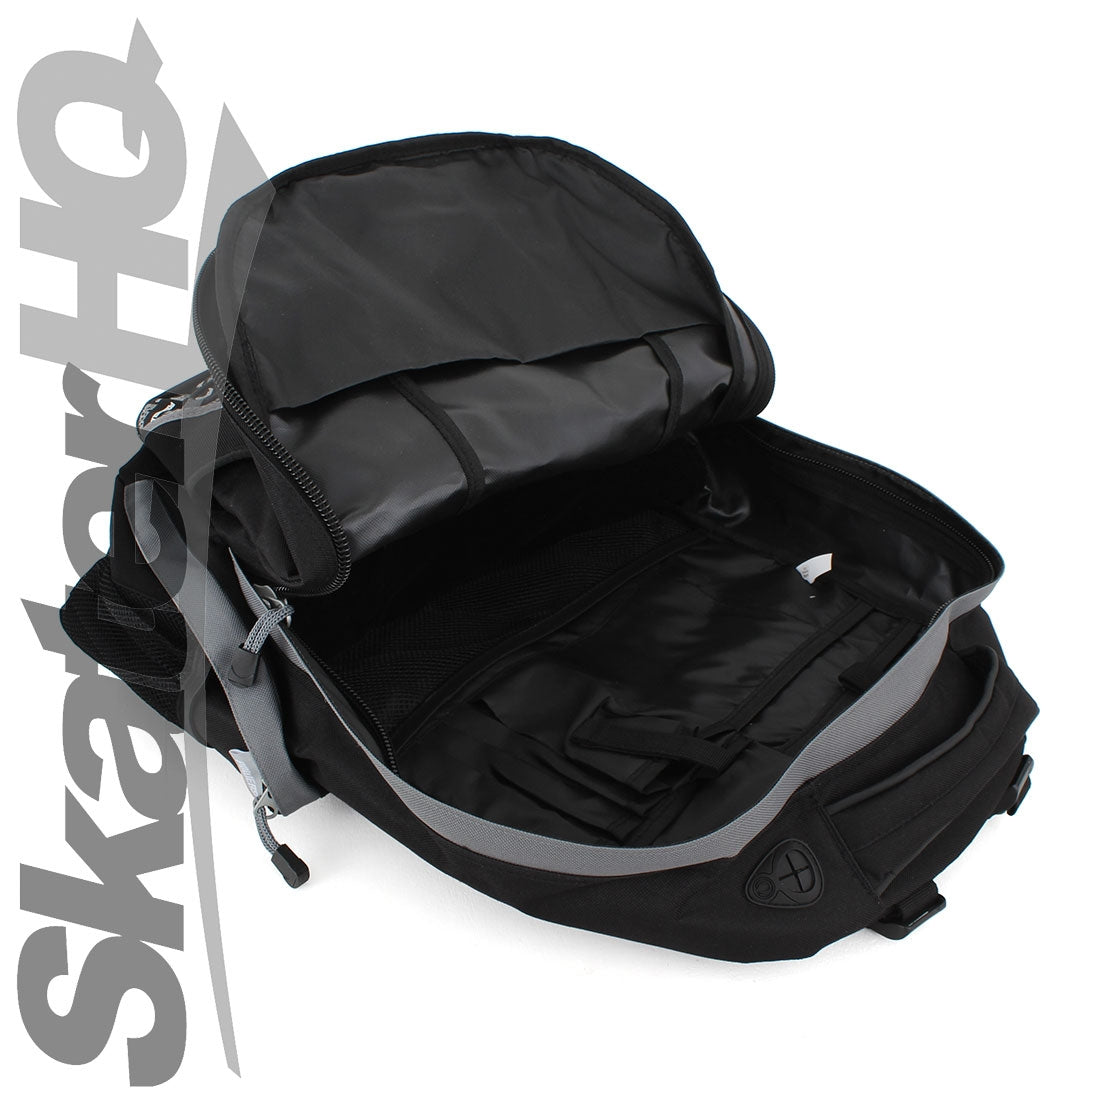 Powerslide Sport Backpack - Black/Grey Bags and Backpacks